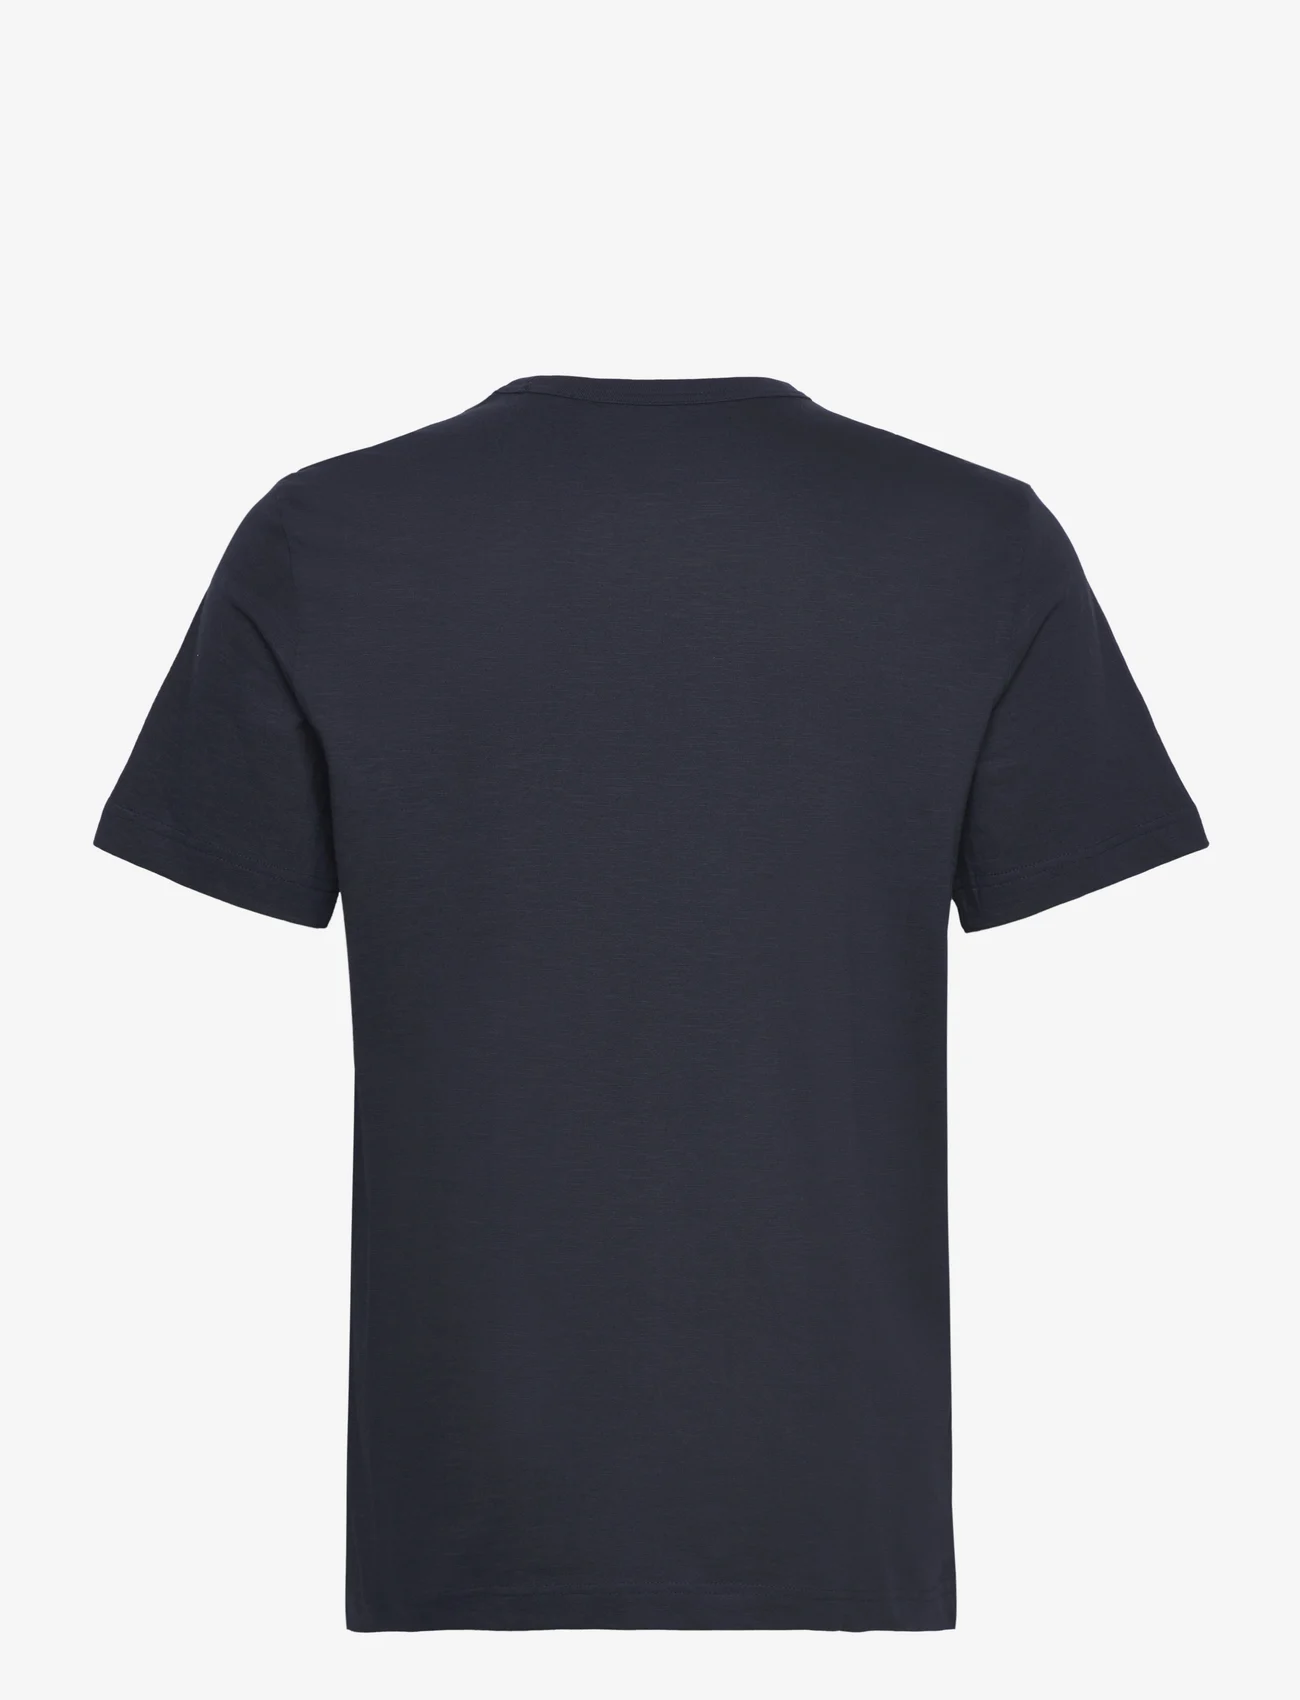 Tom Tailor - printed t-shirt - mažiausios kainos - sky captain blue - 1